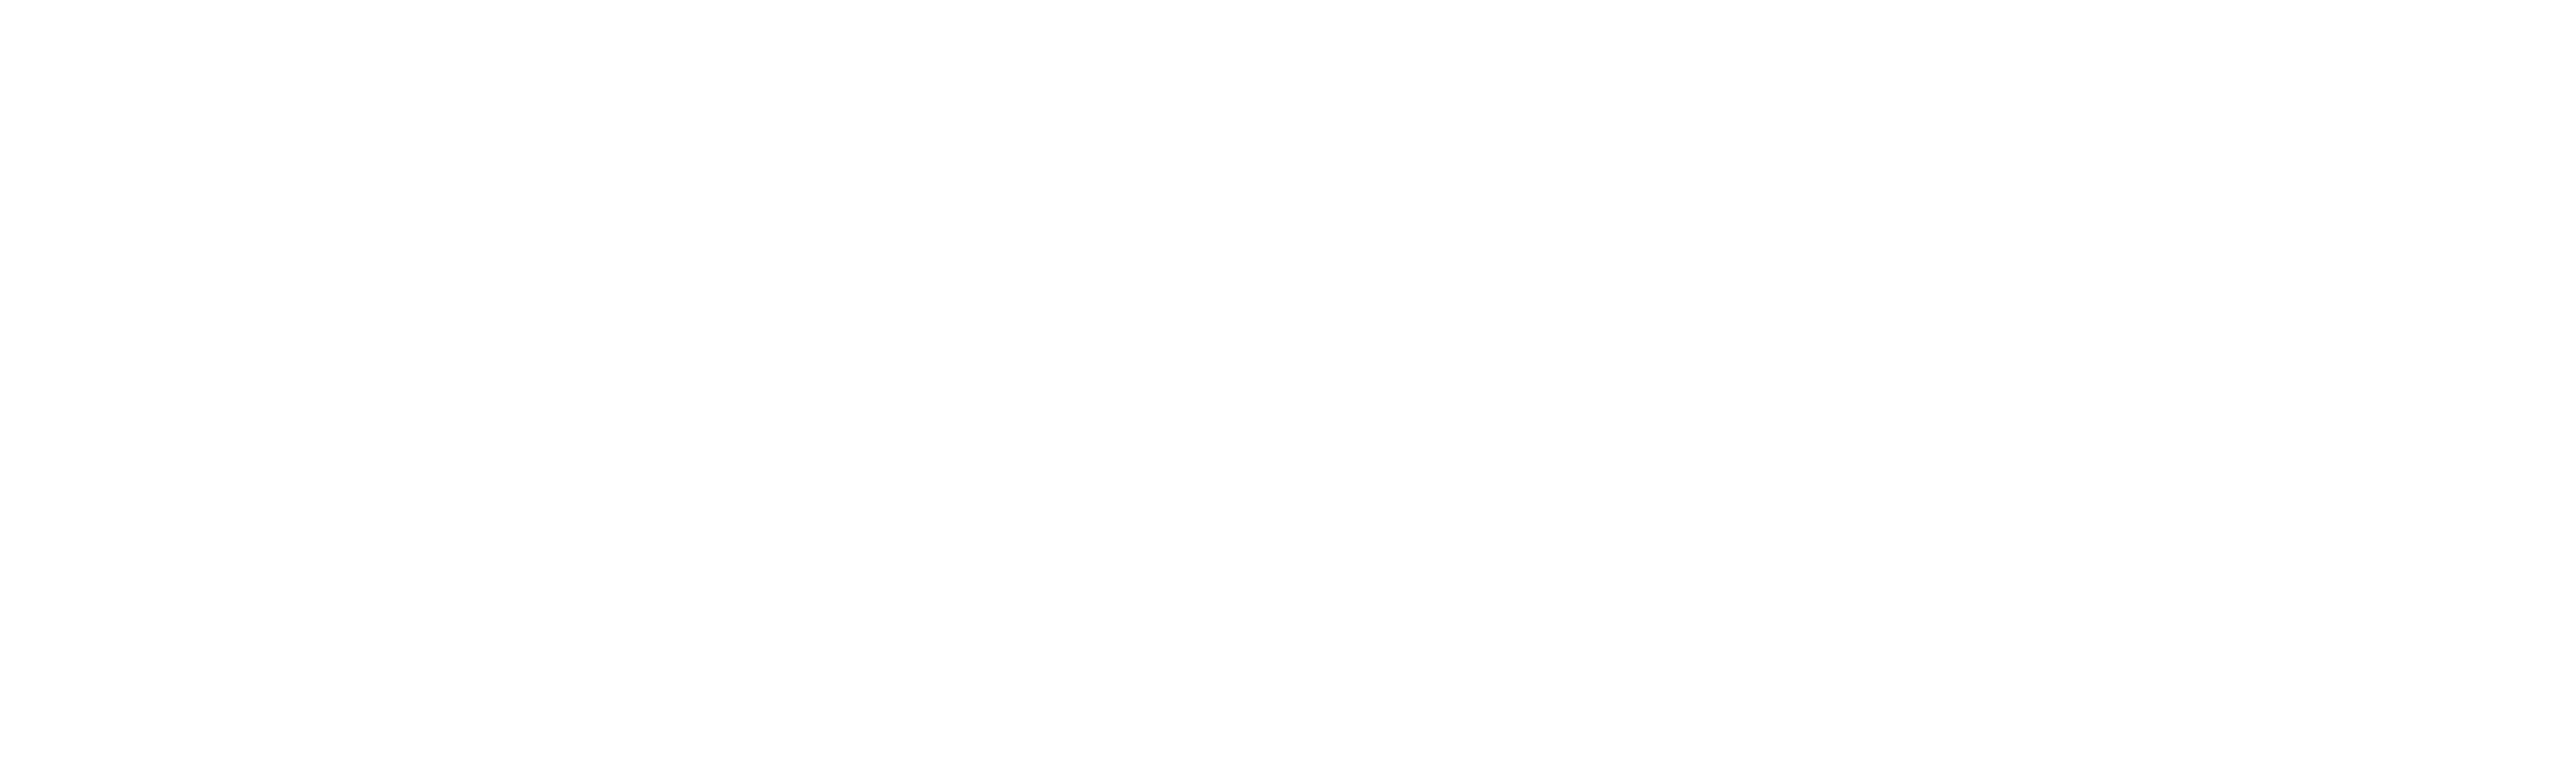 BijouStore